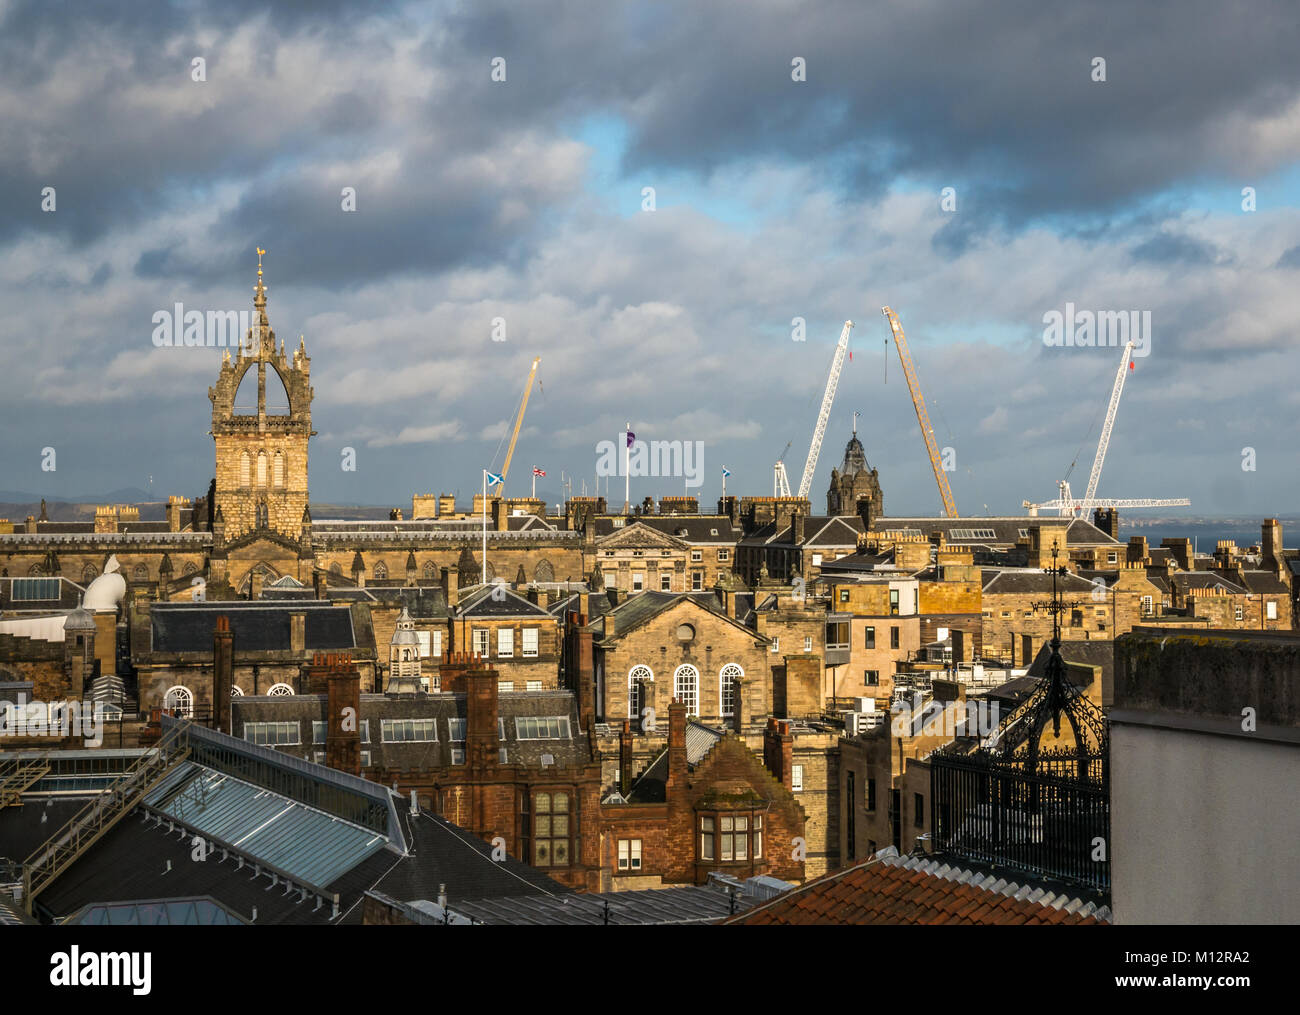 Avis de Tron Kirk spire, toits et les grues en skyline, le centre-ville d'Édimbourg, Écosse, Royaume-Uni Banque D'Images